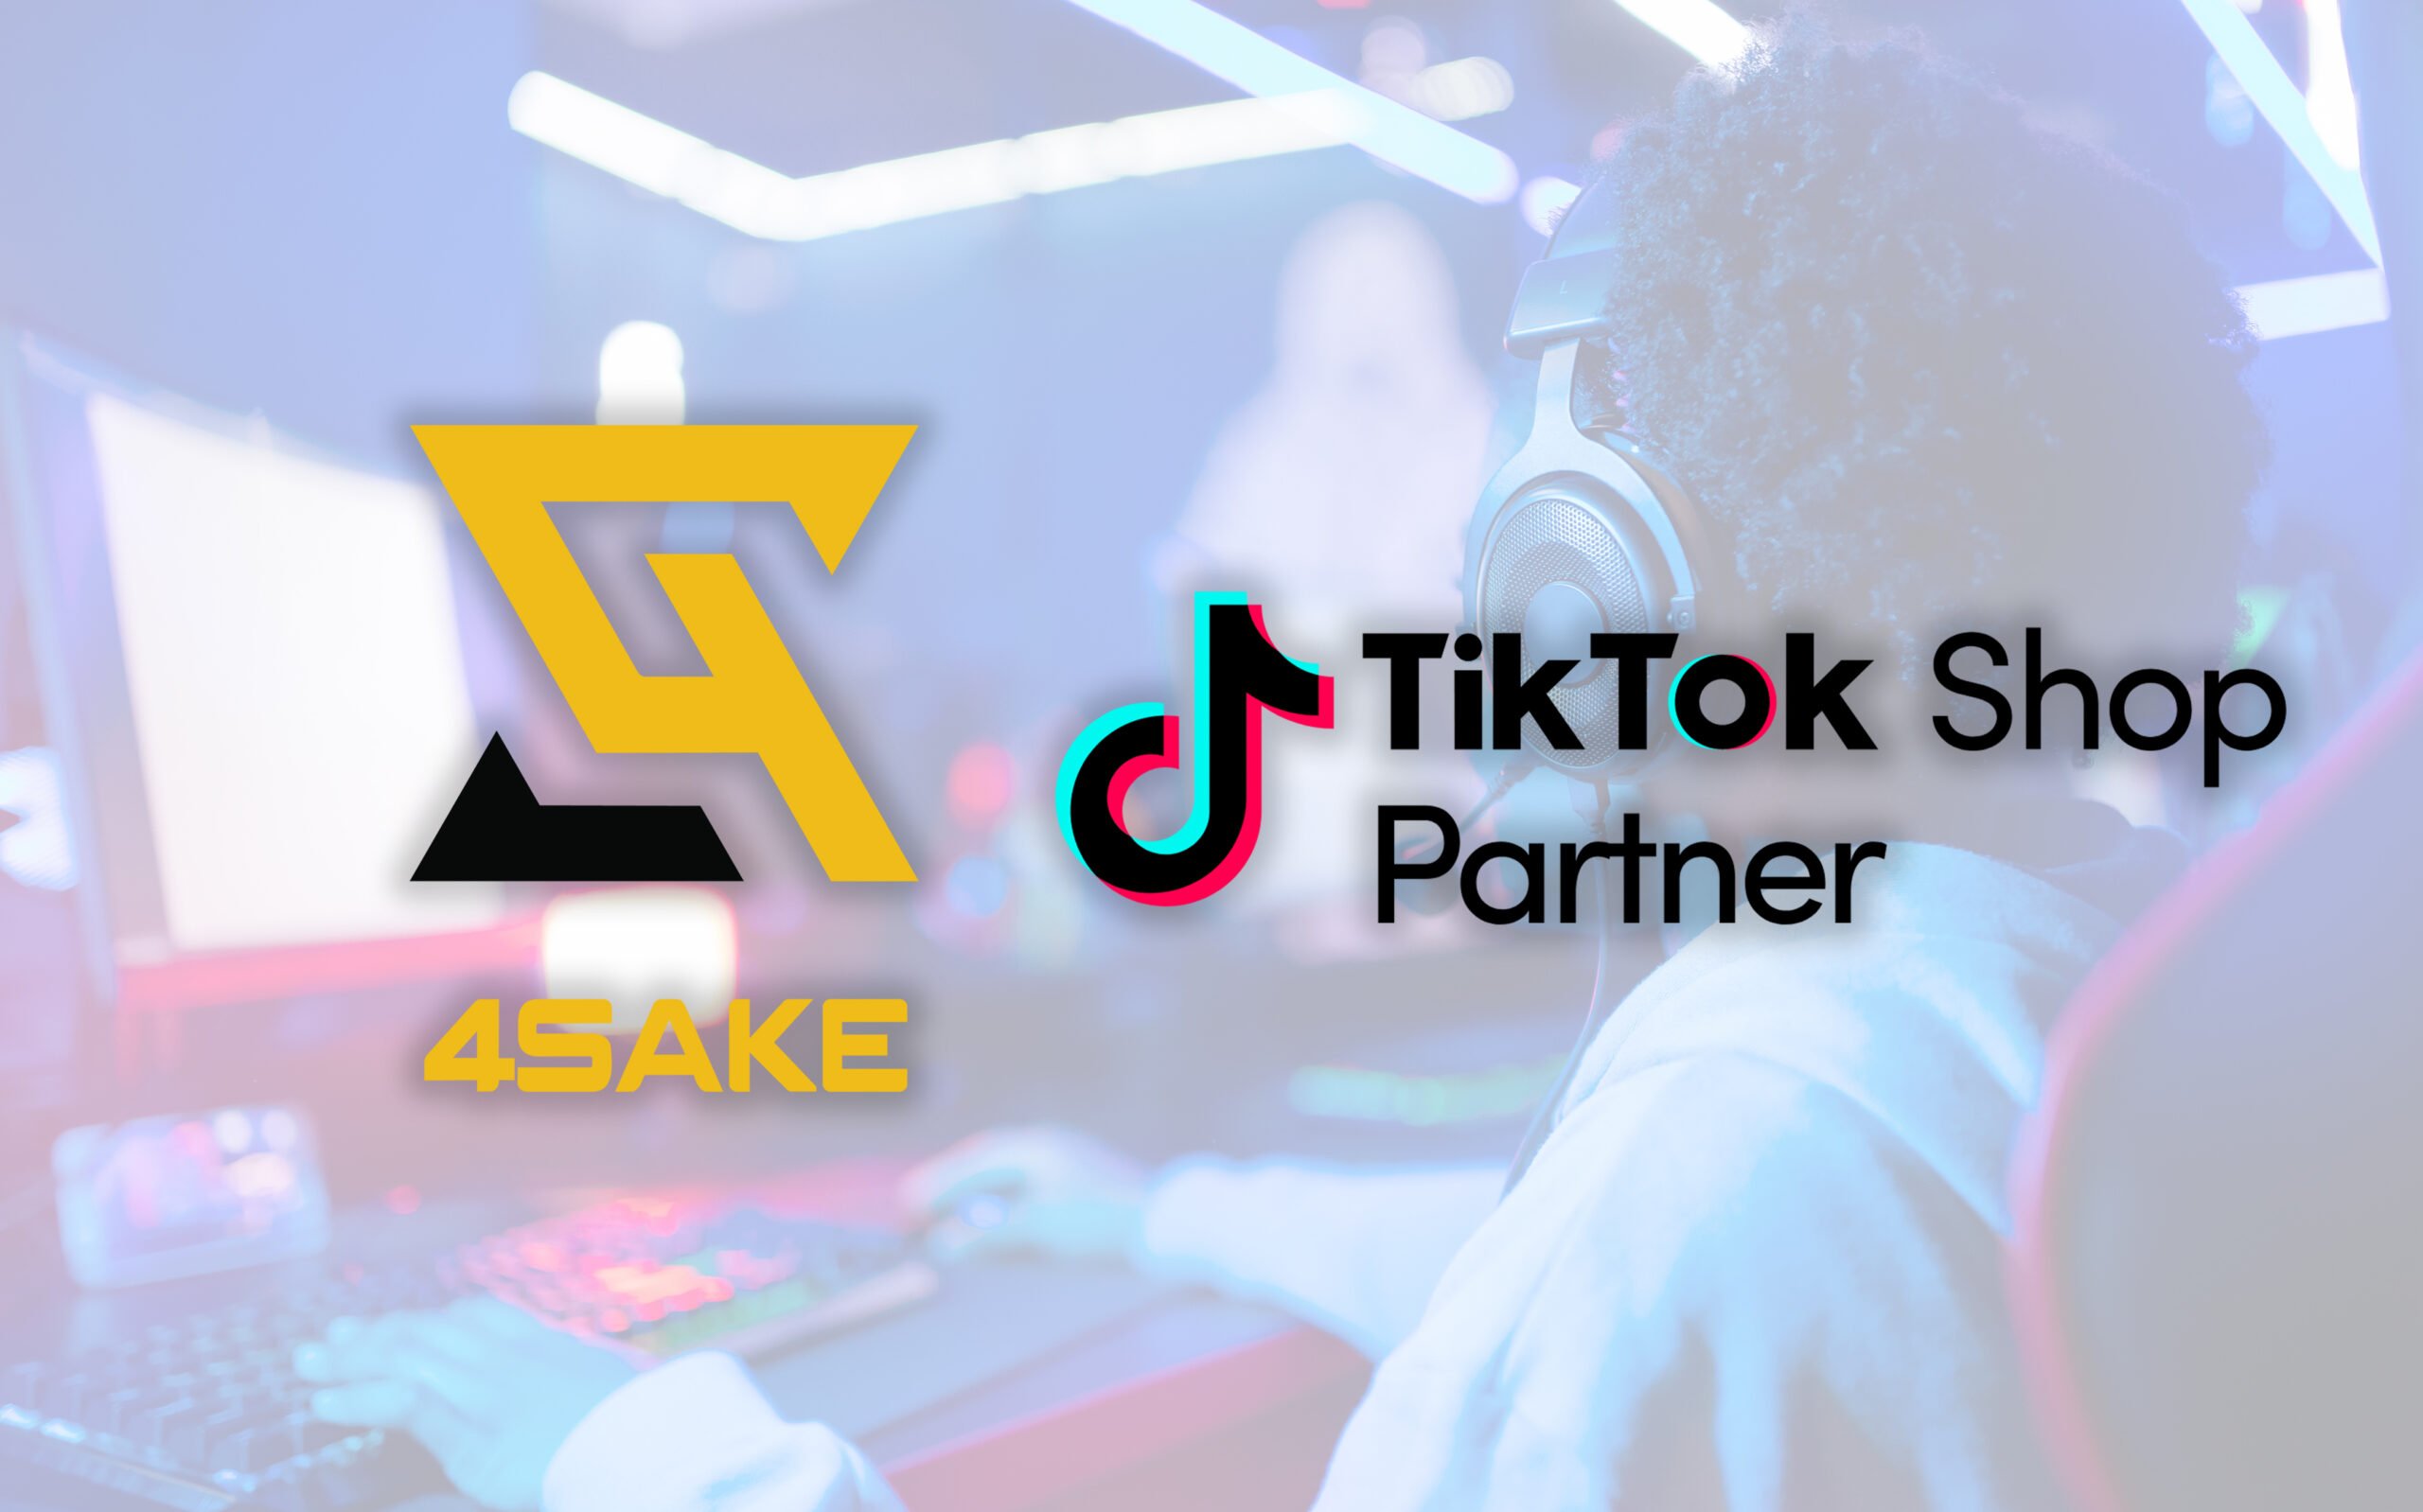 4Sake Named Official UK TikTok Shop Agency Partner!